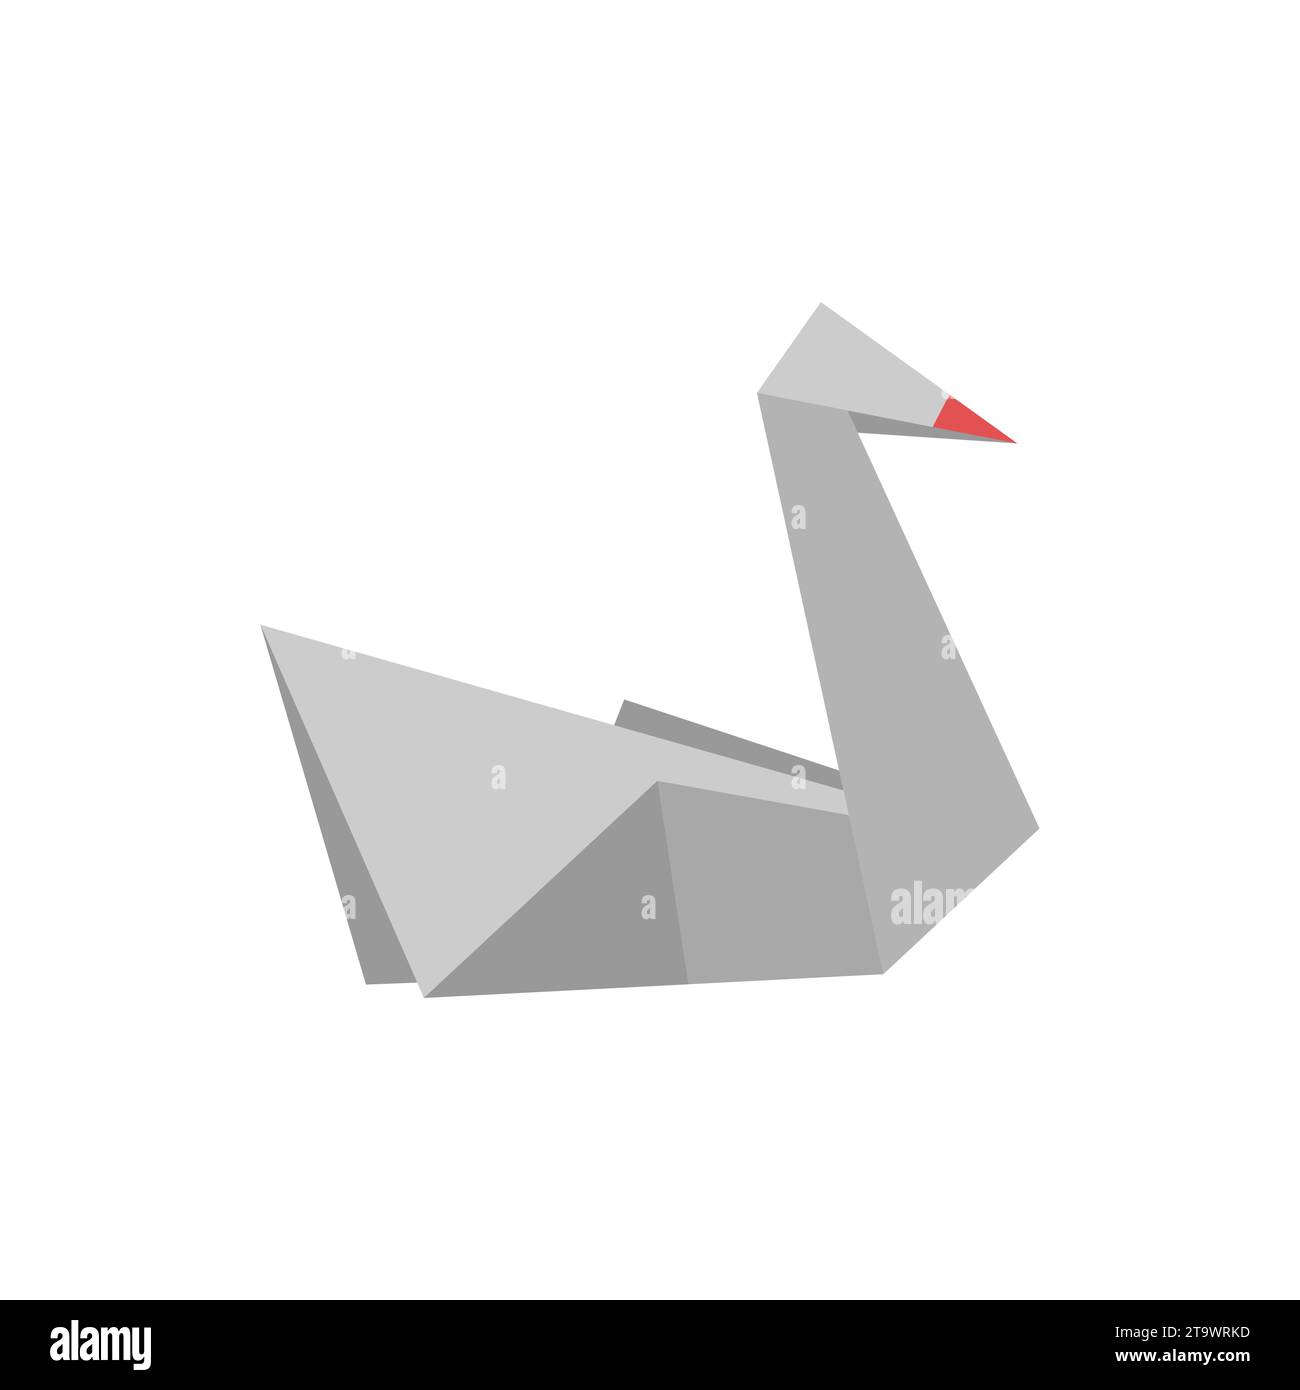 Origami Papier Swan in einem flachen Stil isoliert auf weiß. Kunst des Papierfaltens. Japan Origami-Kran. Papierfigur, Schwanensymbol. Comic geometrisch Stock Vektor